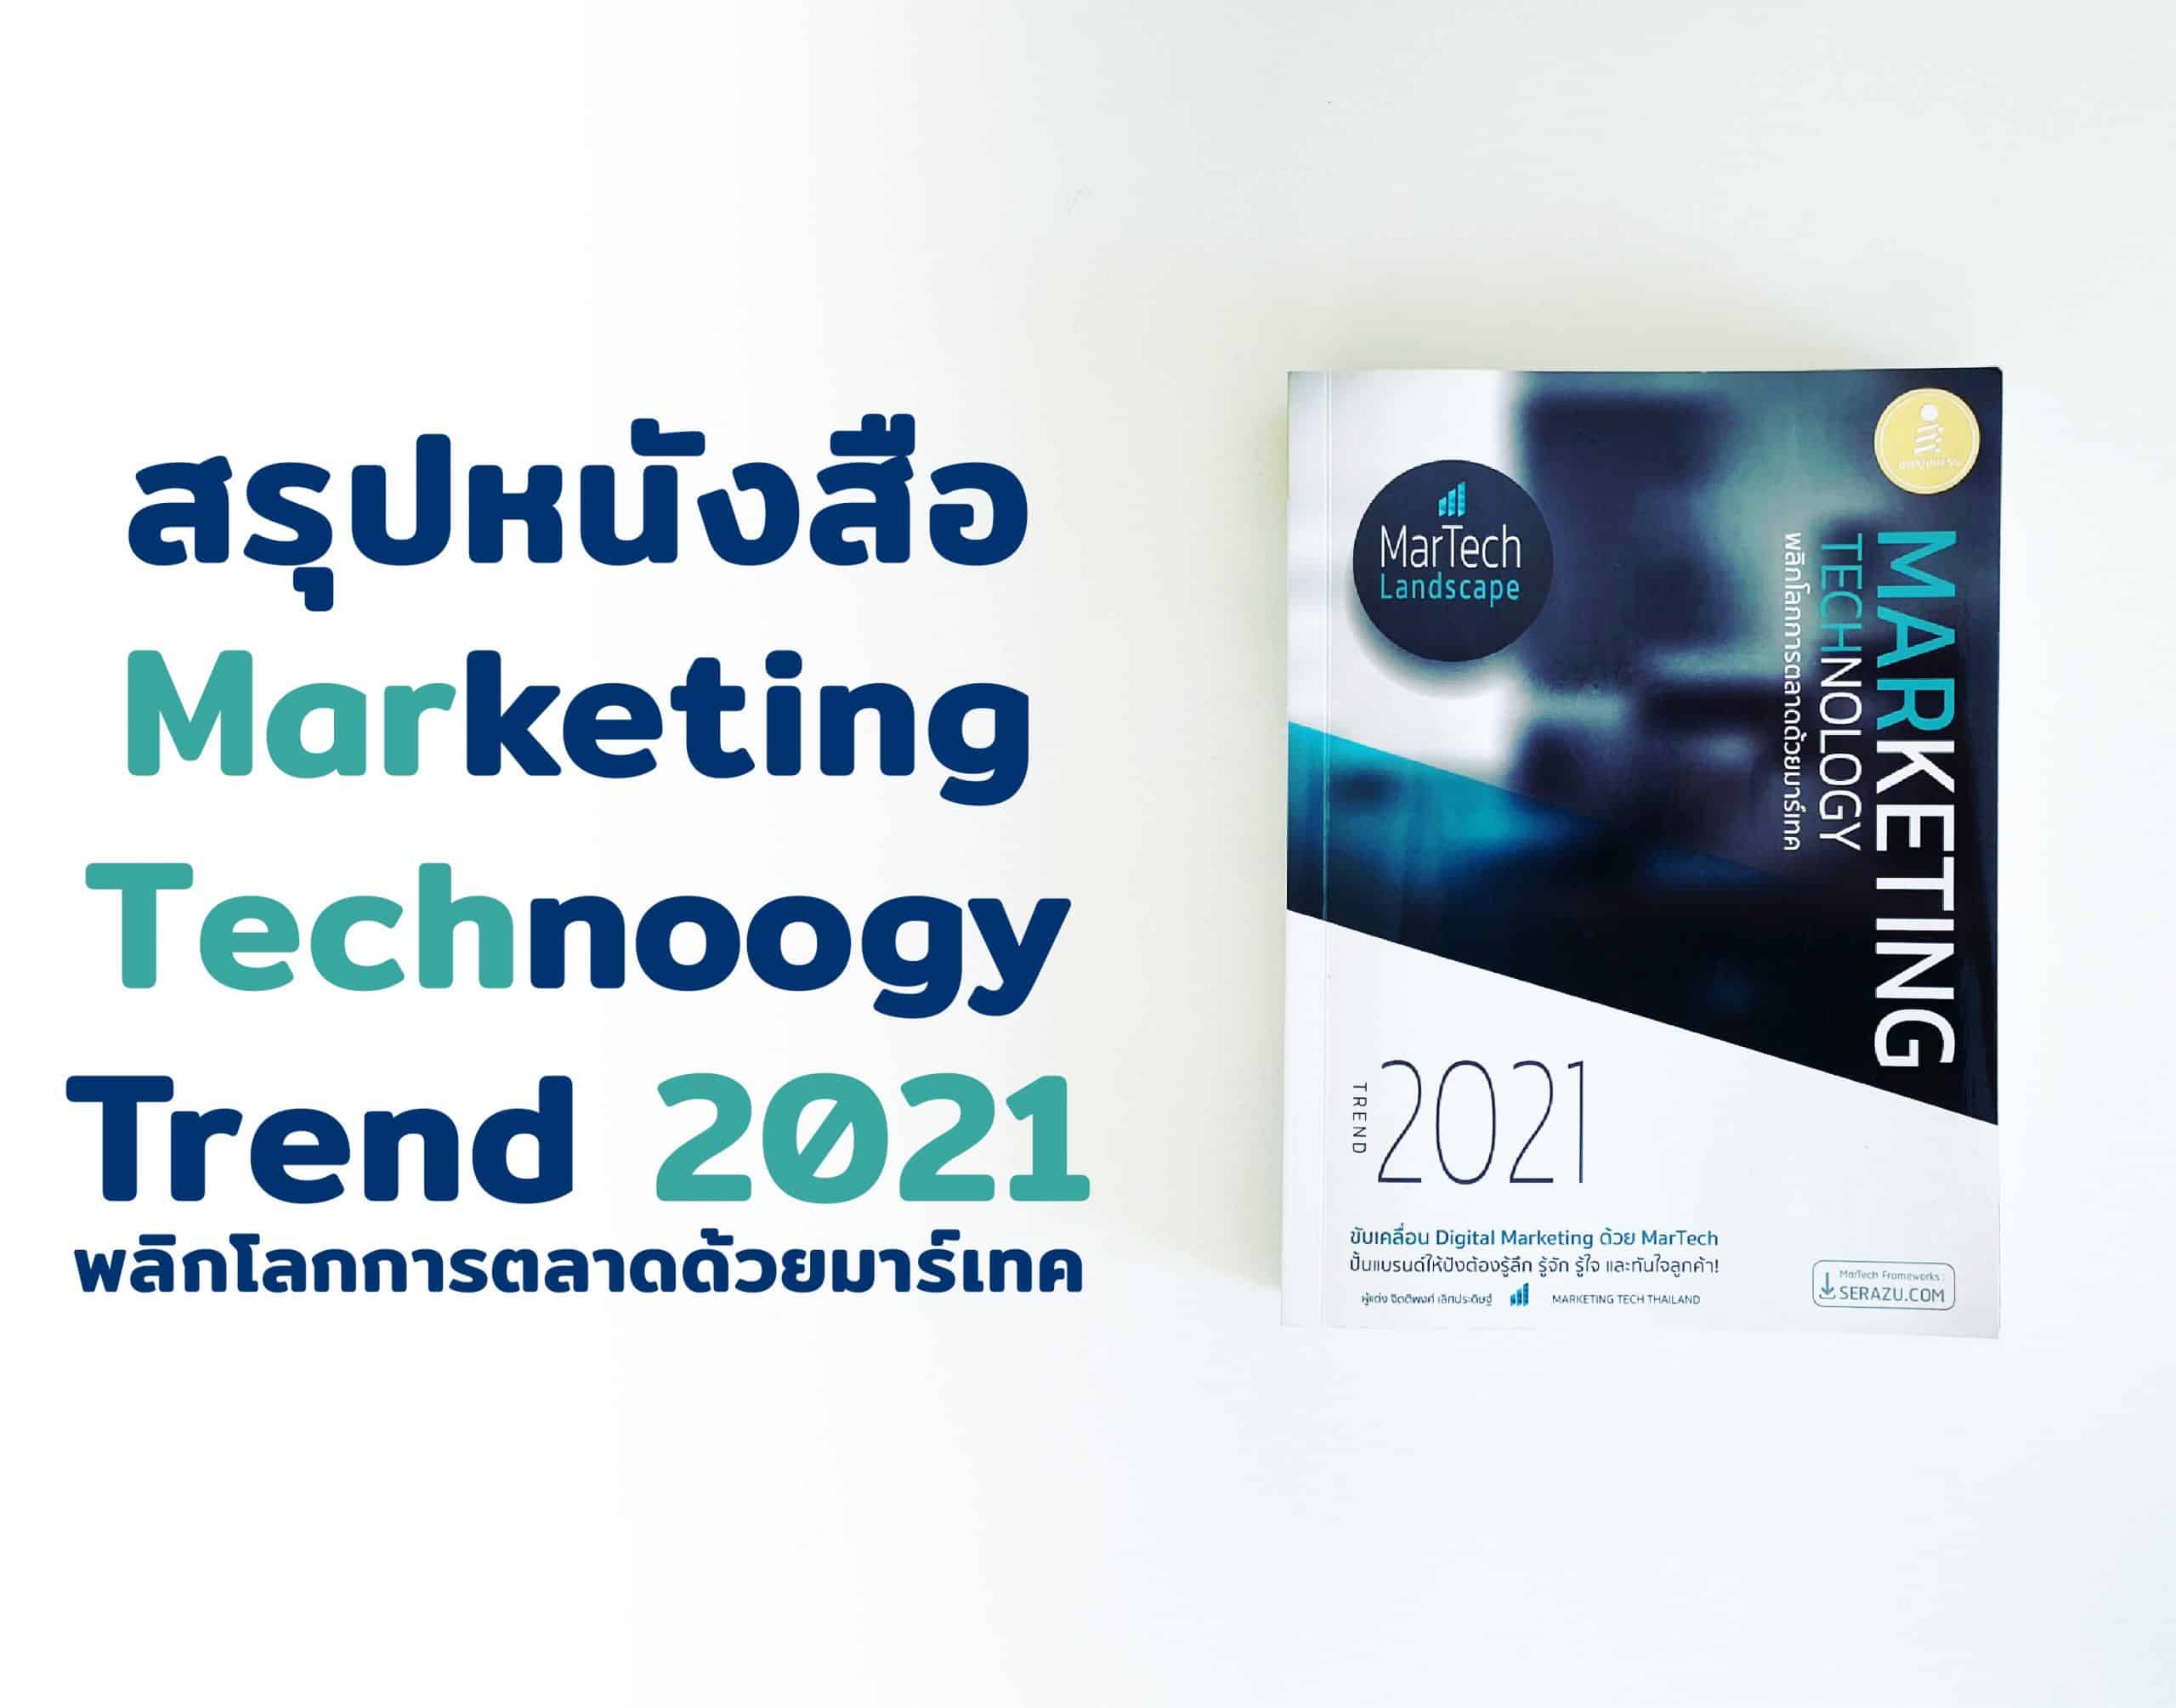 สรุปหนังสือ Marketing Technology Trend 2021 พลิกโลกการตลาดด้วยมาร์เทค ขับเคลื่อน Digital Marketing ด้วย MarTech จาก Marketing Tech Thailand